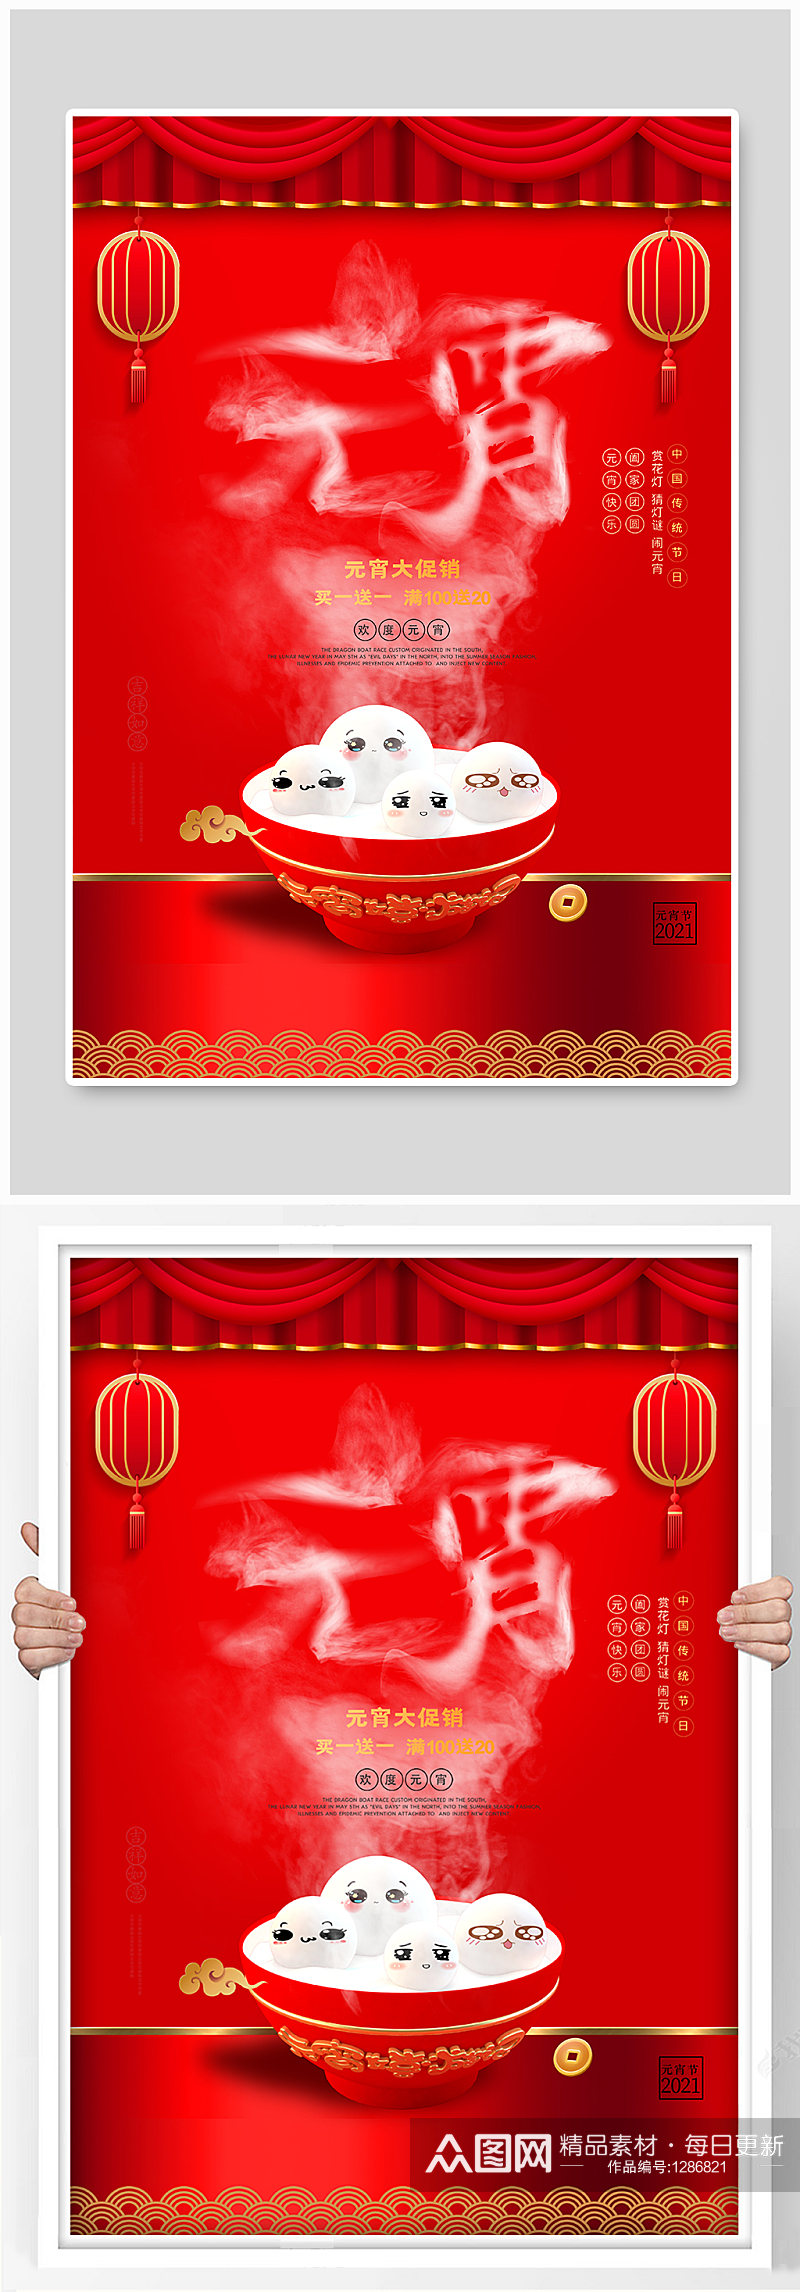 中国传统节日元宵节海报素材